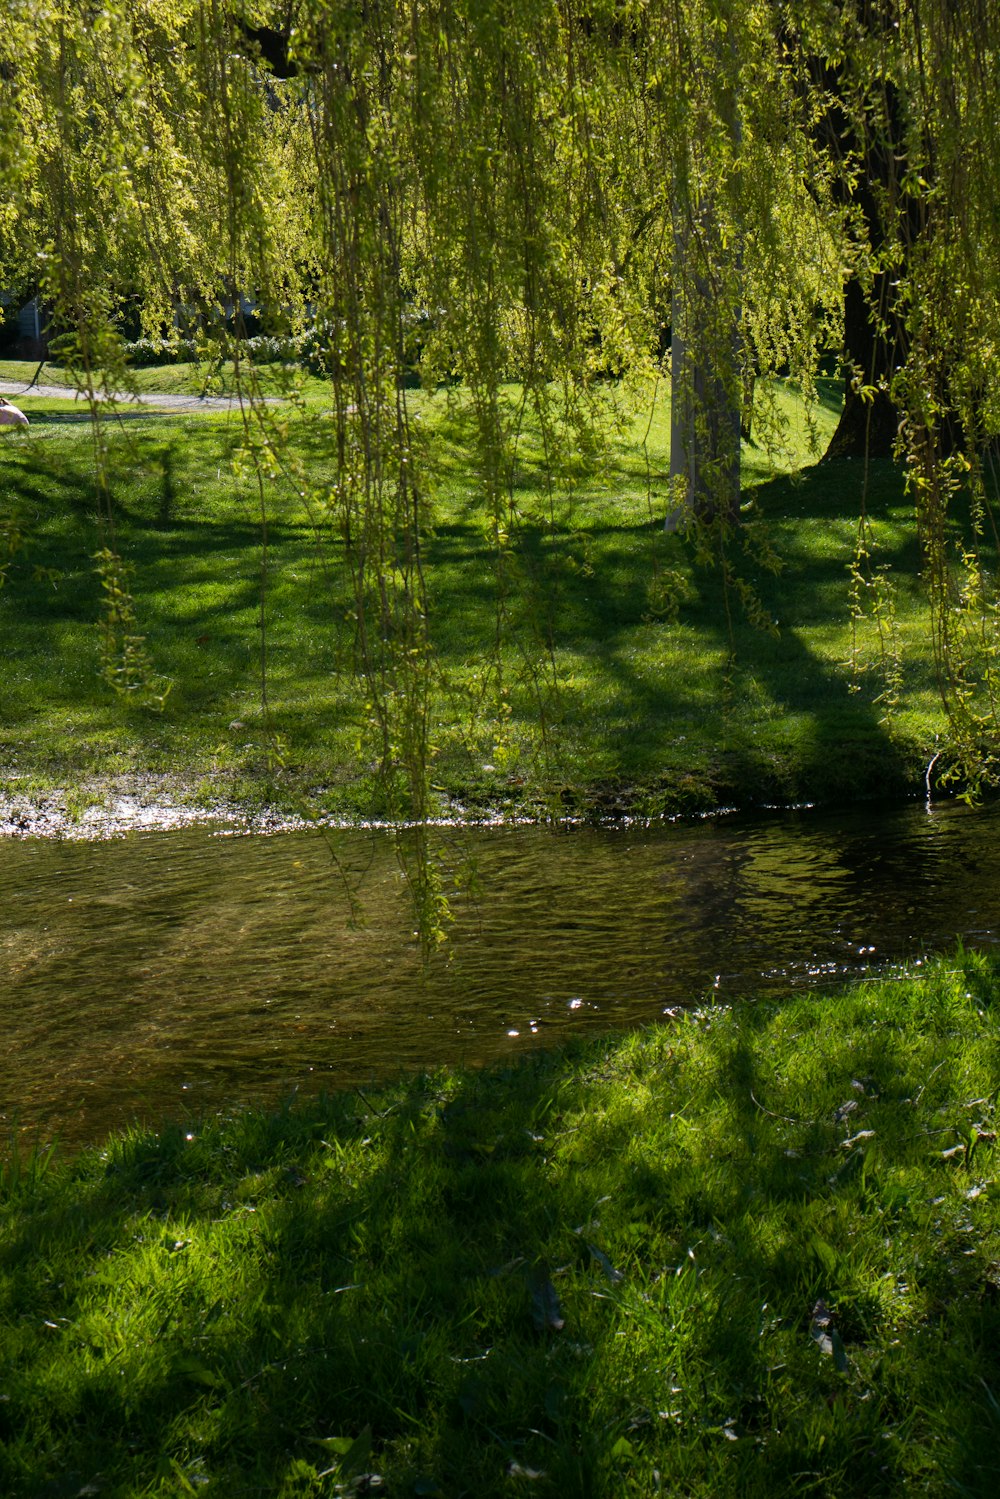 a small stream running through a lush green park